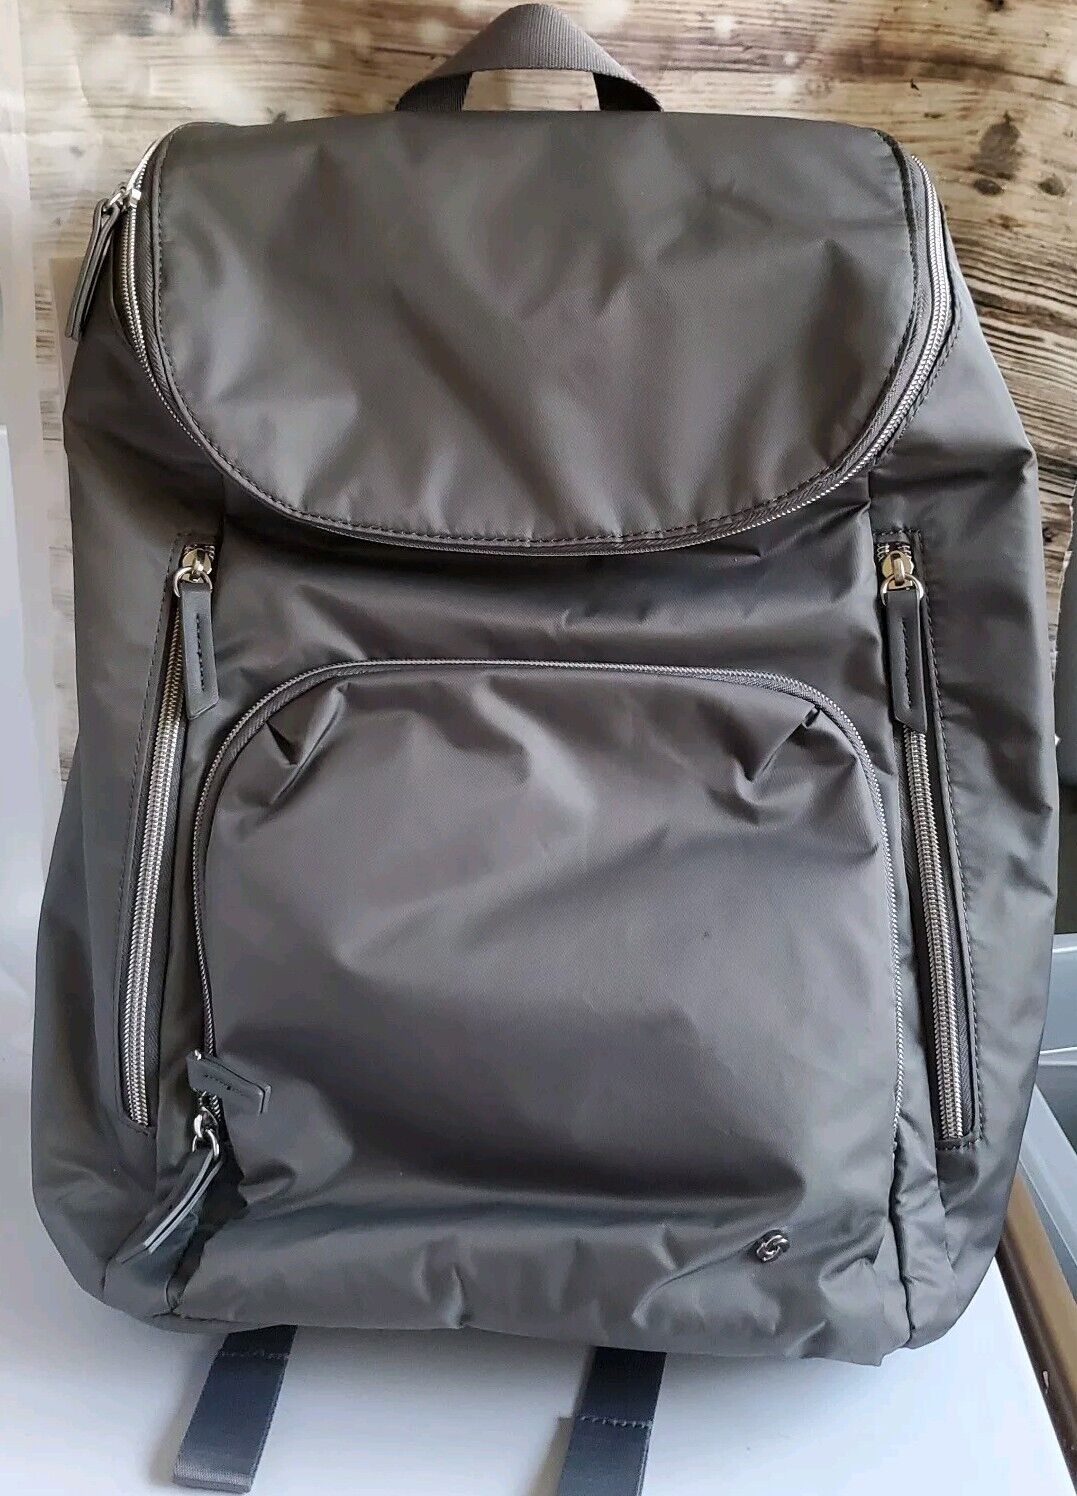 Samsonite - Mobile Solution Deluxe Laptop Backpack Gray New